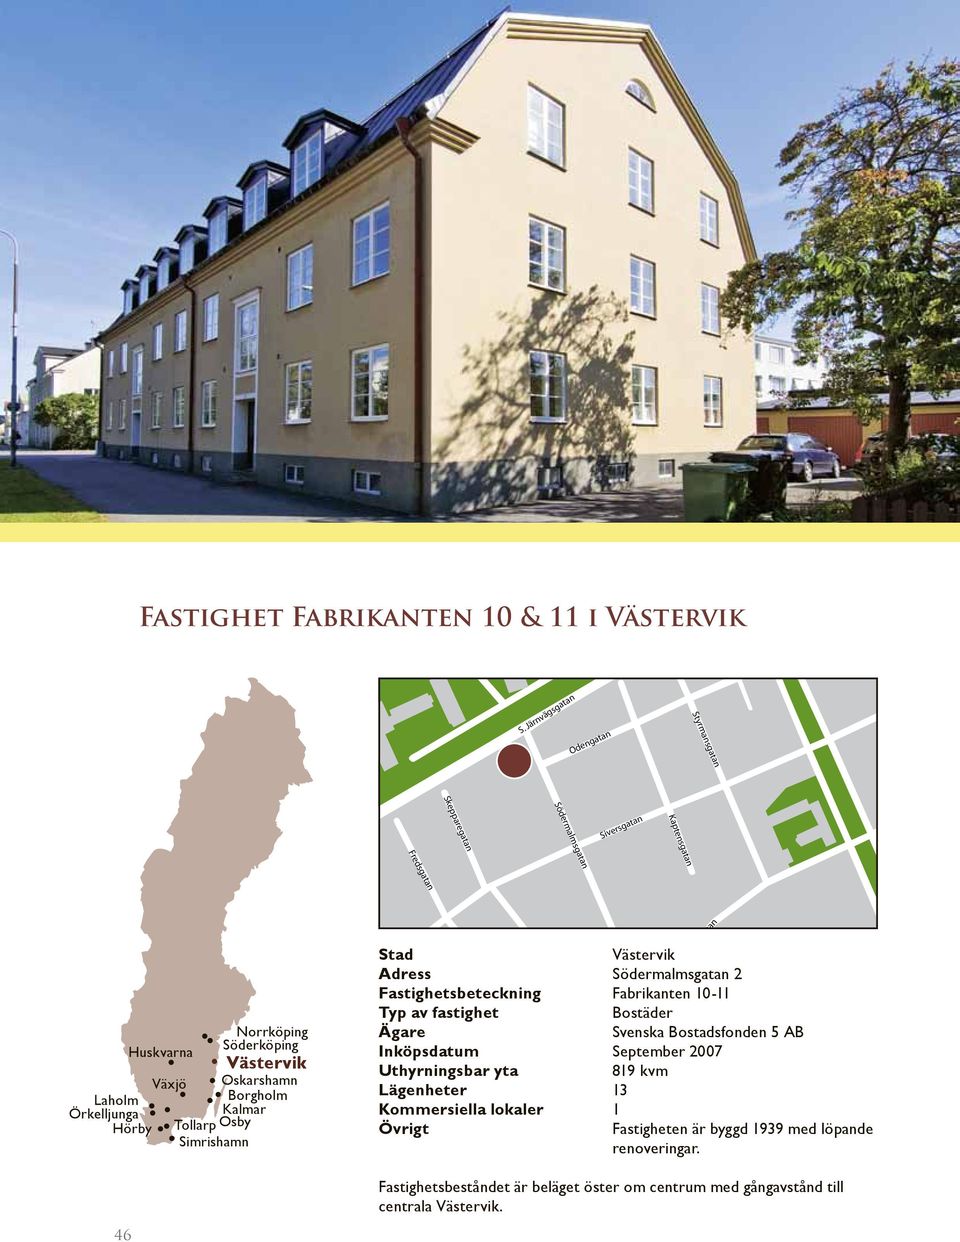 Adress Södermalmsgatan 2 Fastighetsbeteckning Fabrikanten 10-11 Inköpsdatum September 2007 819 kvm